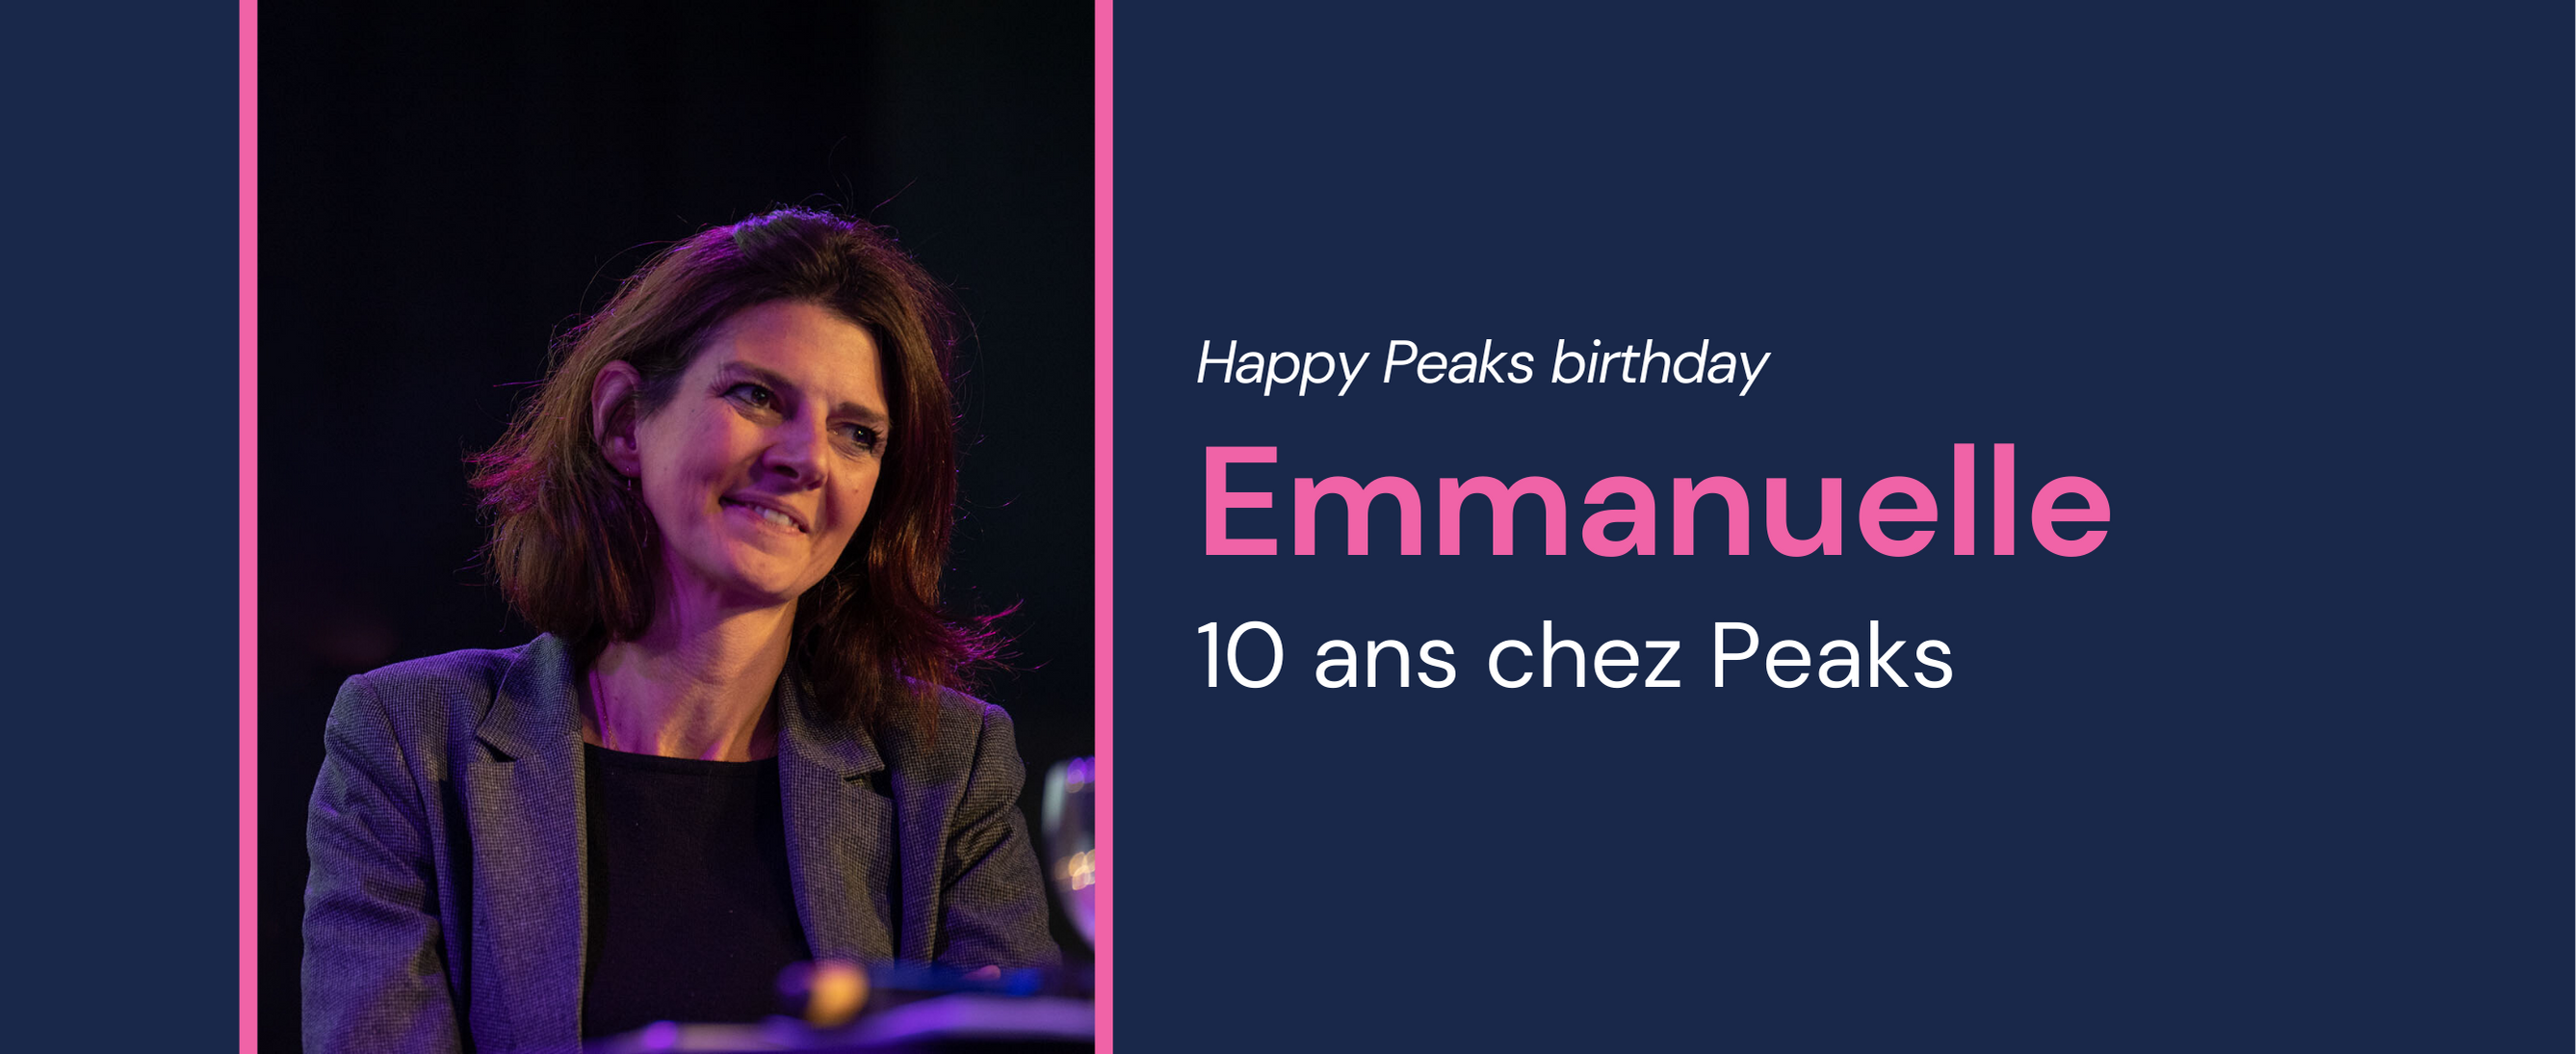 Emmanuelle, DRH et responsable de la communication interne chez Peaks fête ses 10 ans